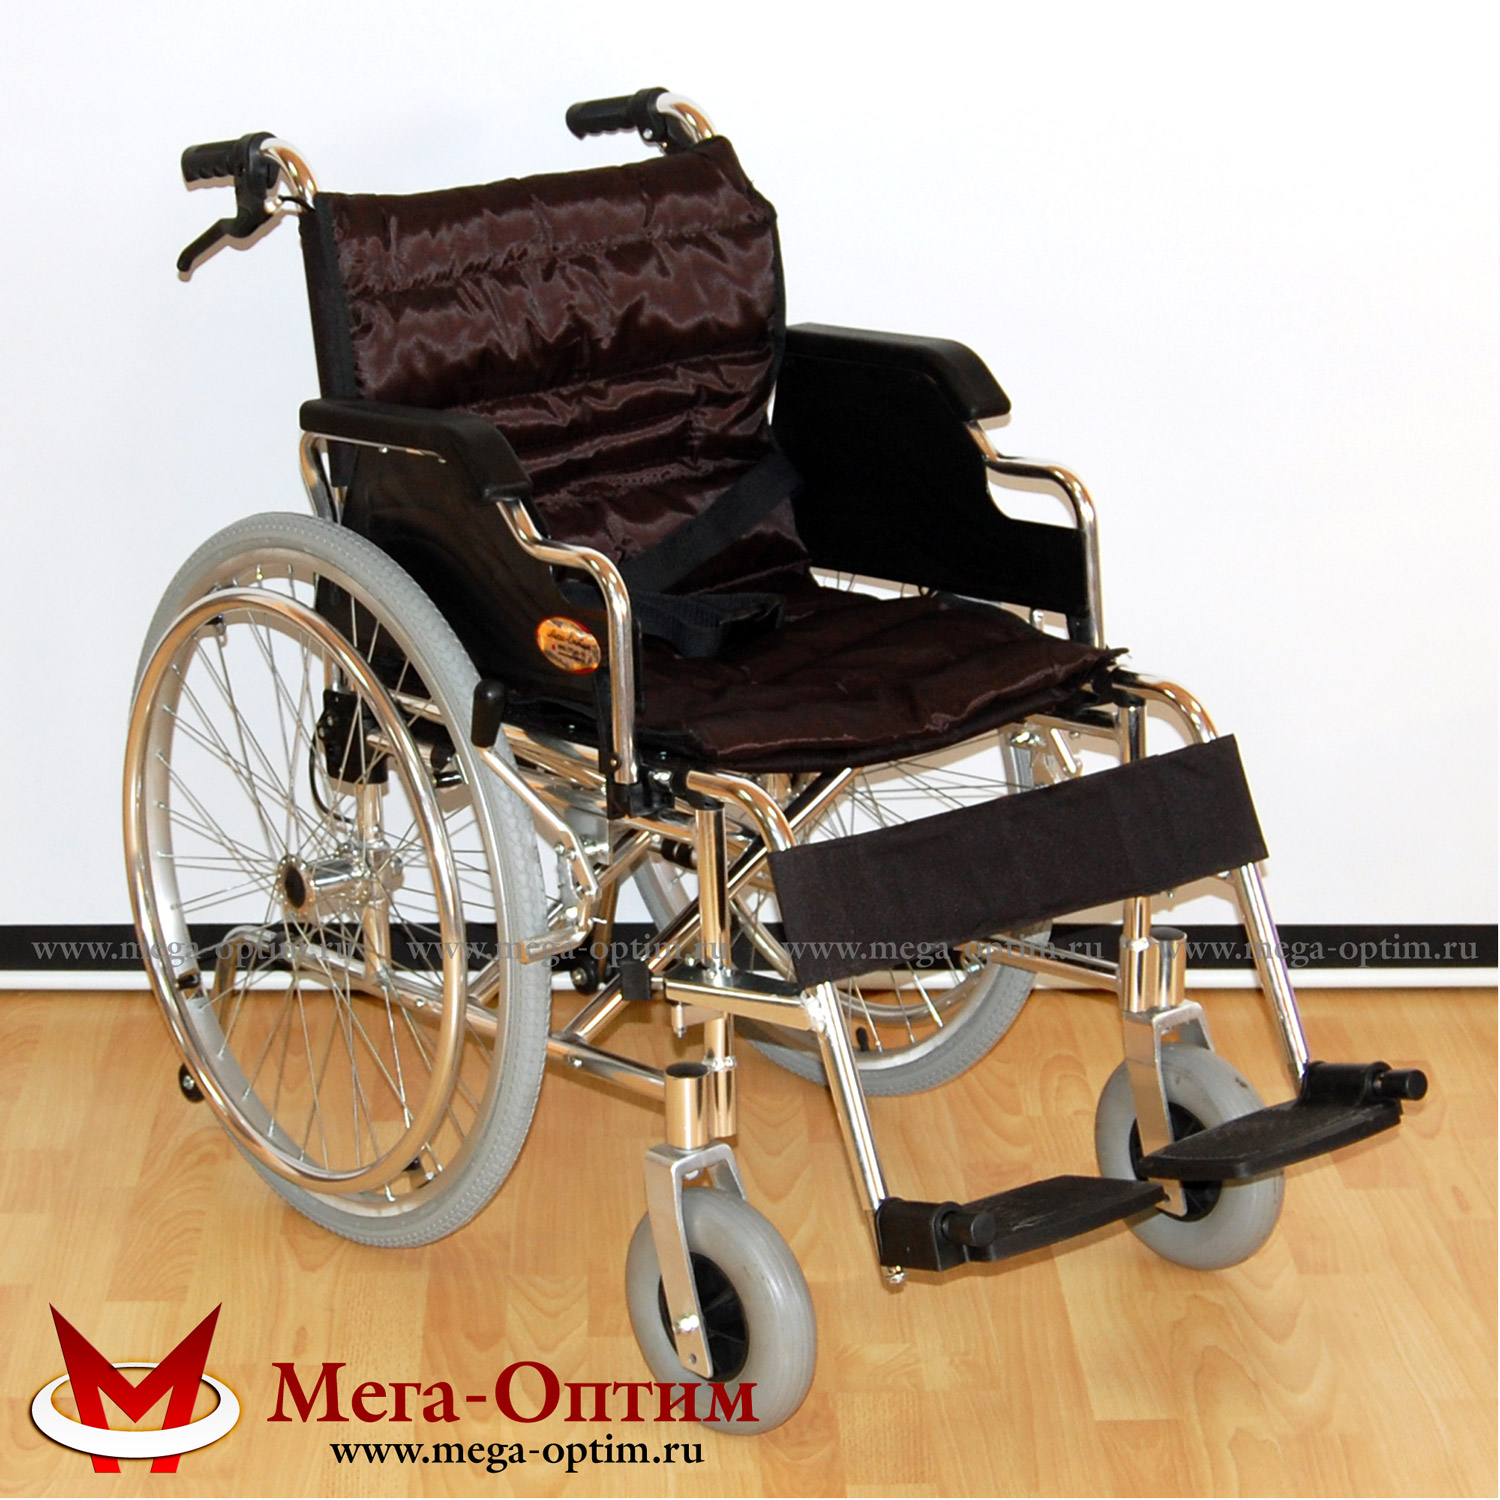 Инвалидная кресло-коляска алюминиевая МЕГА-ОПТИМ FS 908 LJ-41(46)